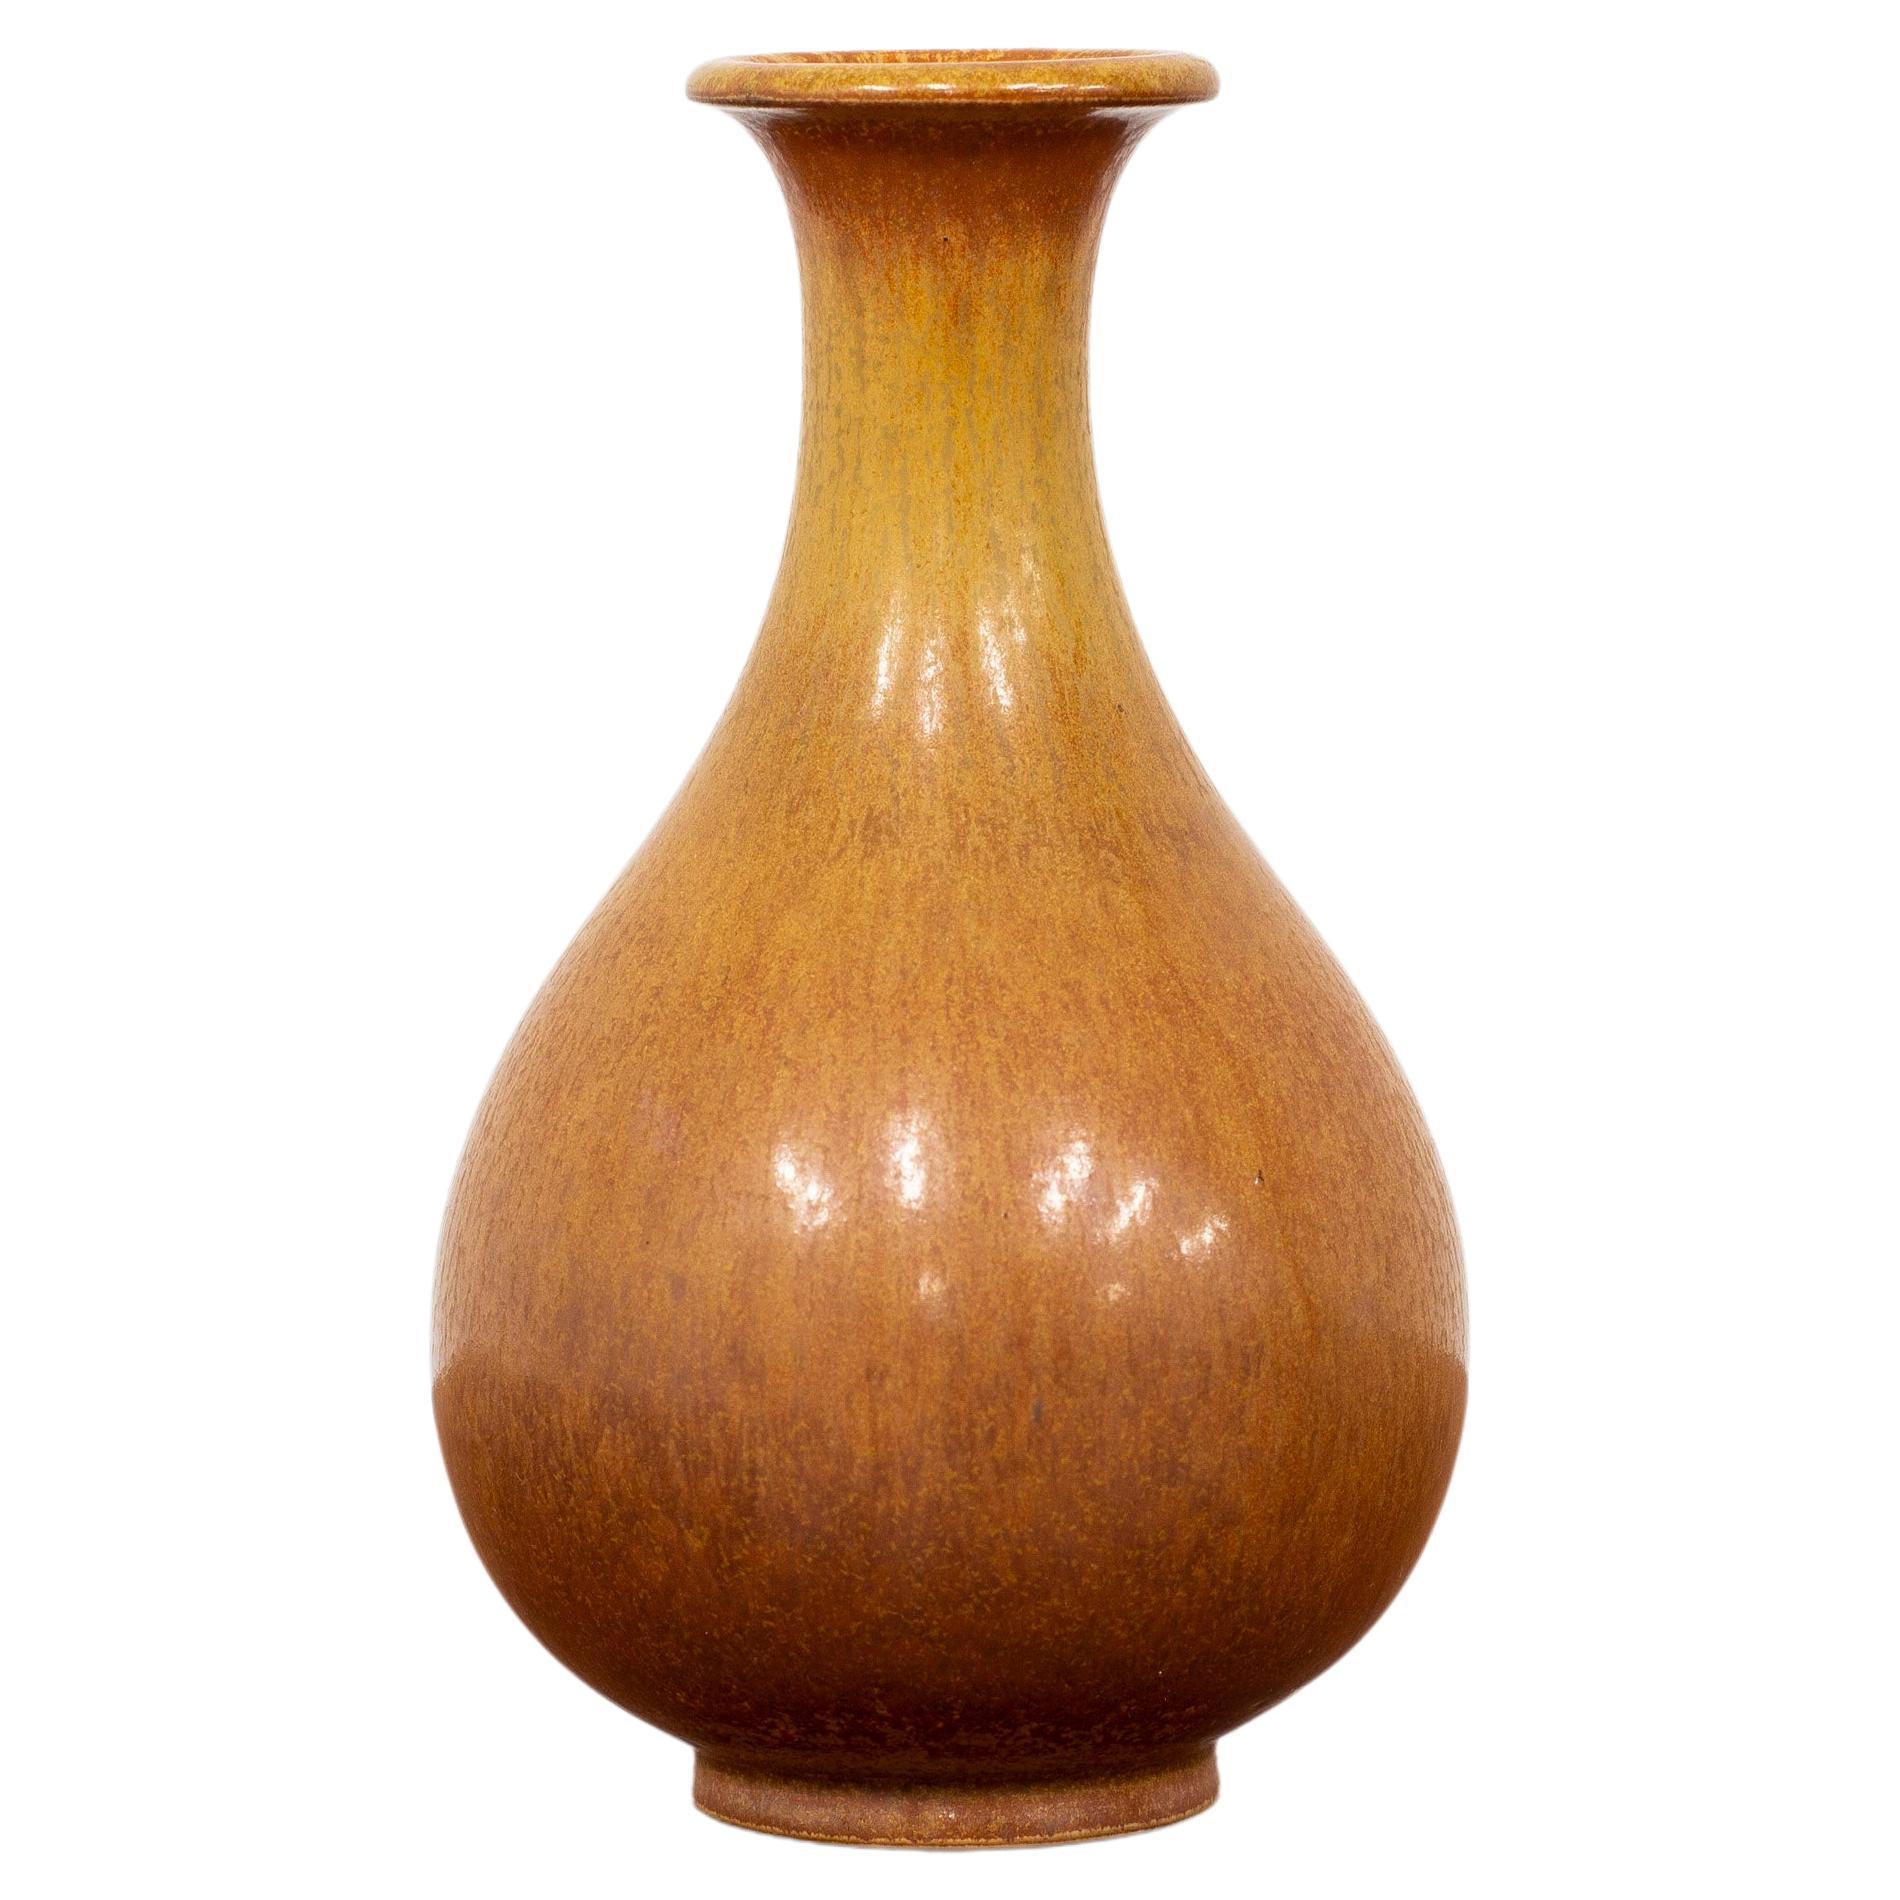 Braune Vase aus Steingut in Braun, entworfen von Gunnar Nylund, 1950er Jahre